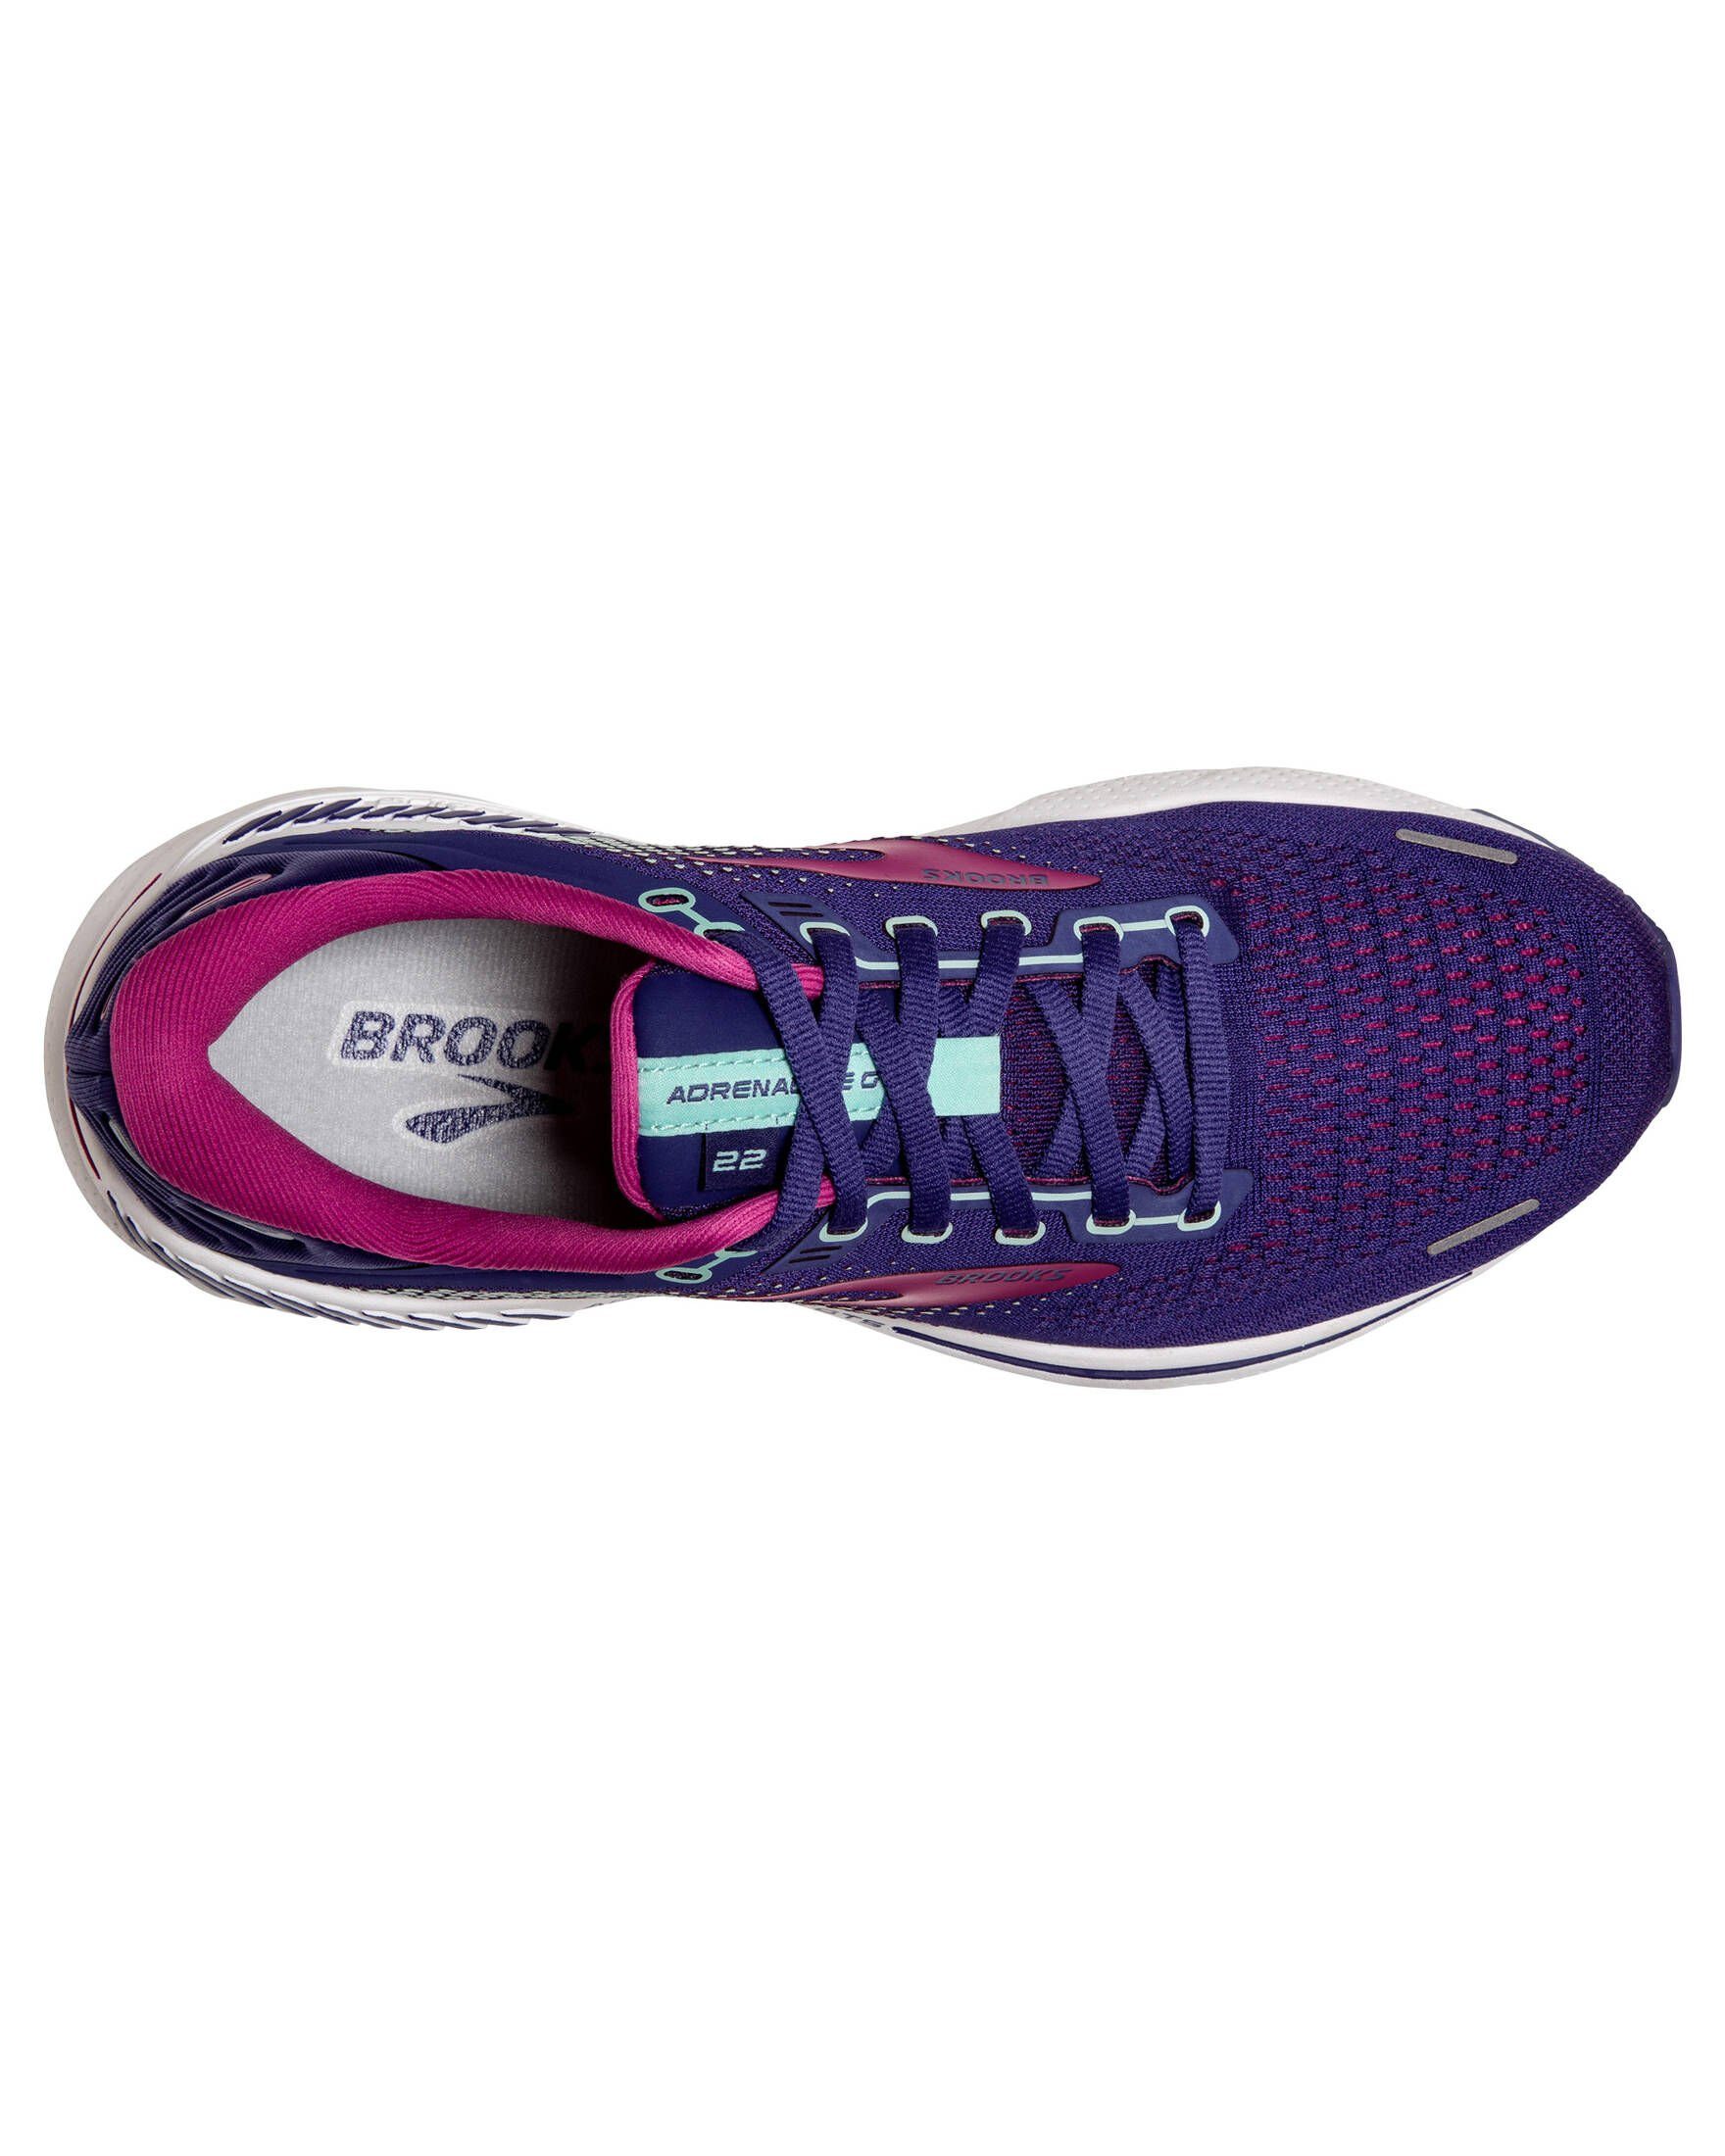 Brooks Damen Laufschuhe ADRENALINE 22 Laufschuh Navy/Yucca/Pink GTS